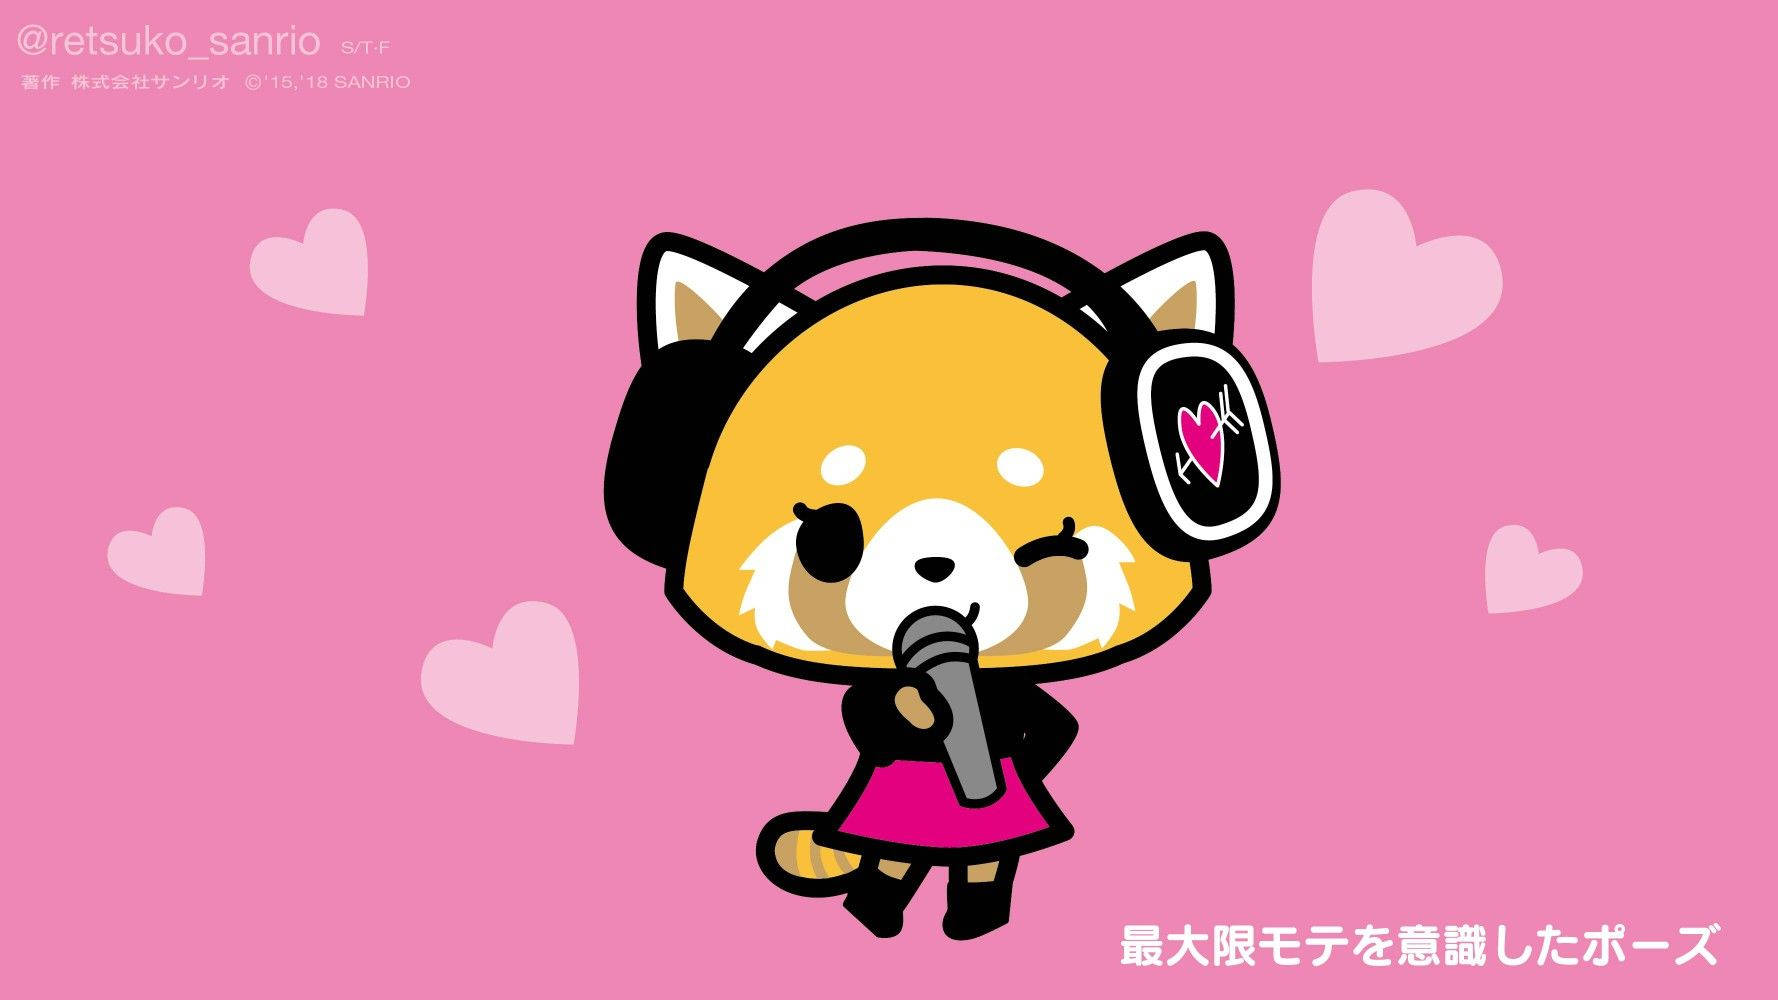 Adorable Aggretsuko Singing Background